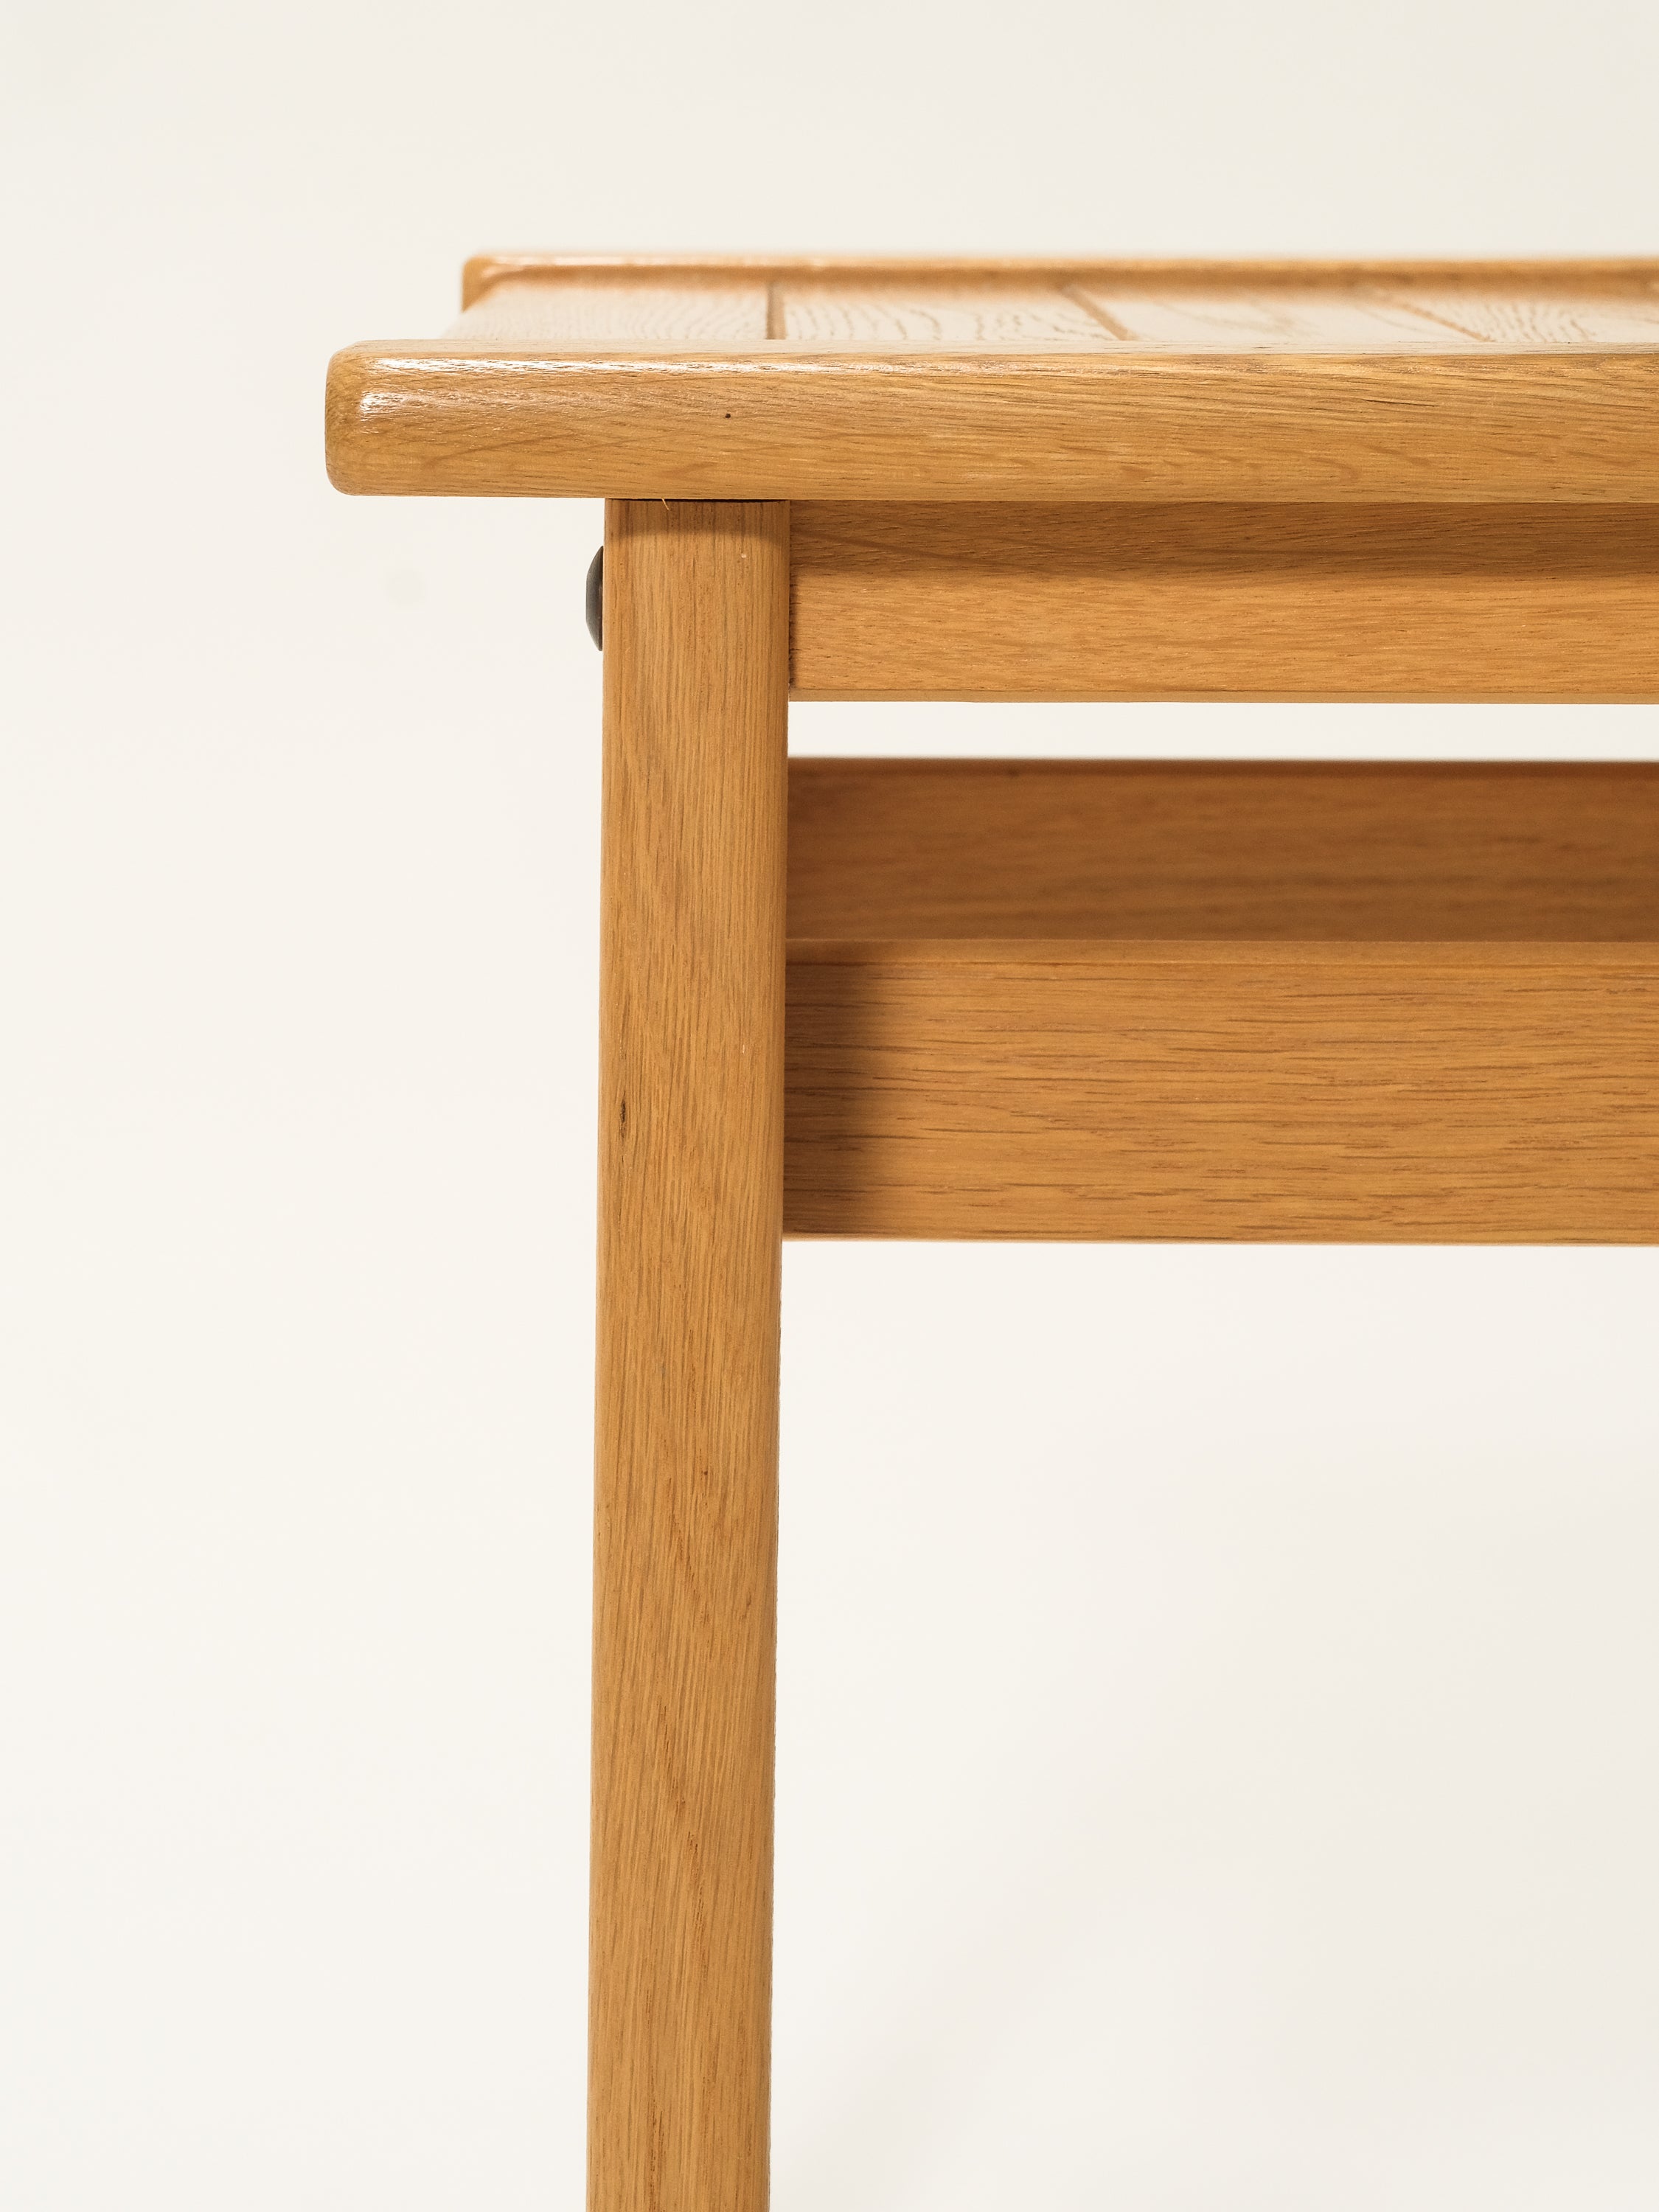 Oak Side Table / Bench by Ingvar Andersson for Averskogs Möbelfabrik, Lammhult, 1960s